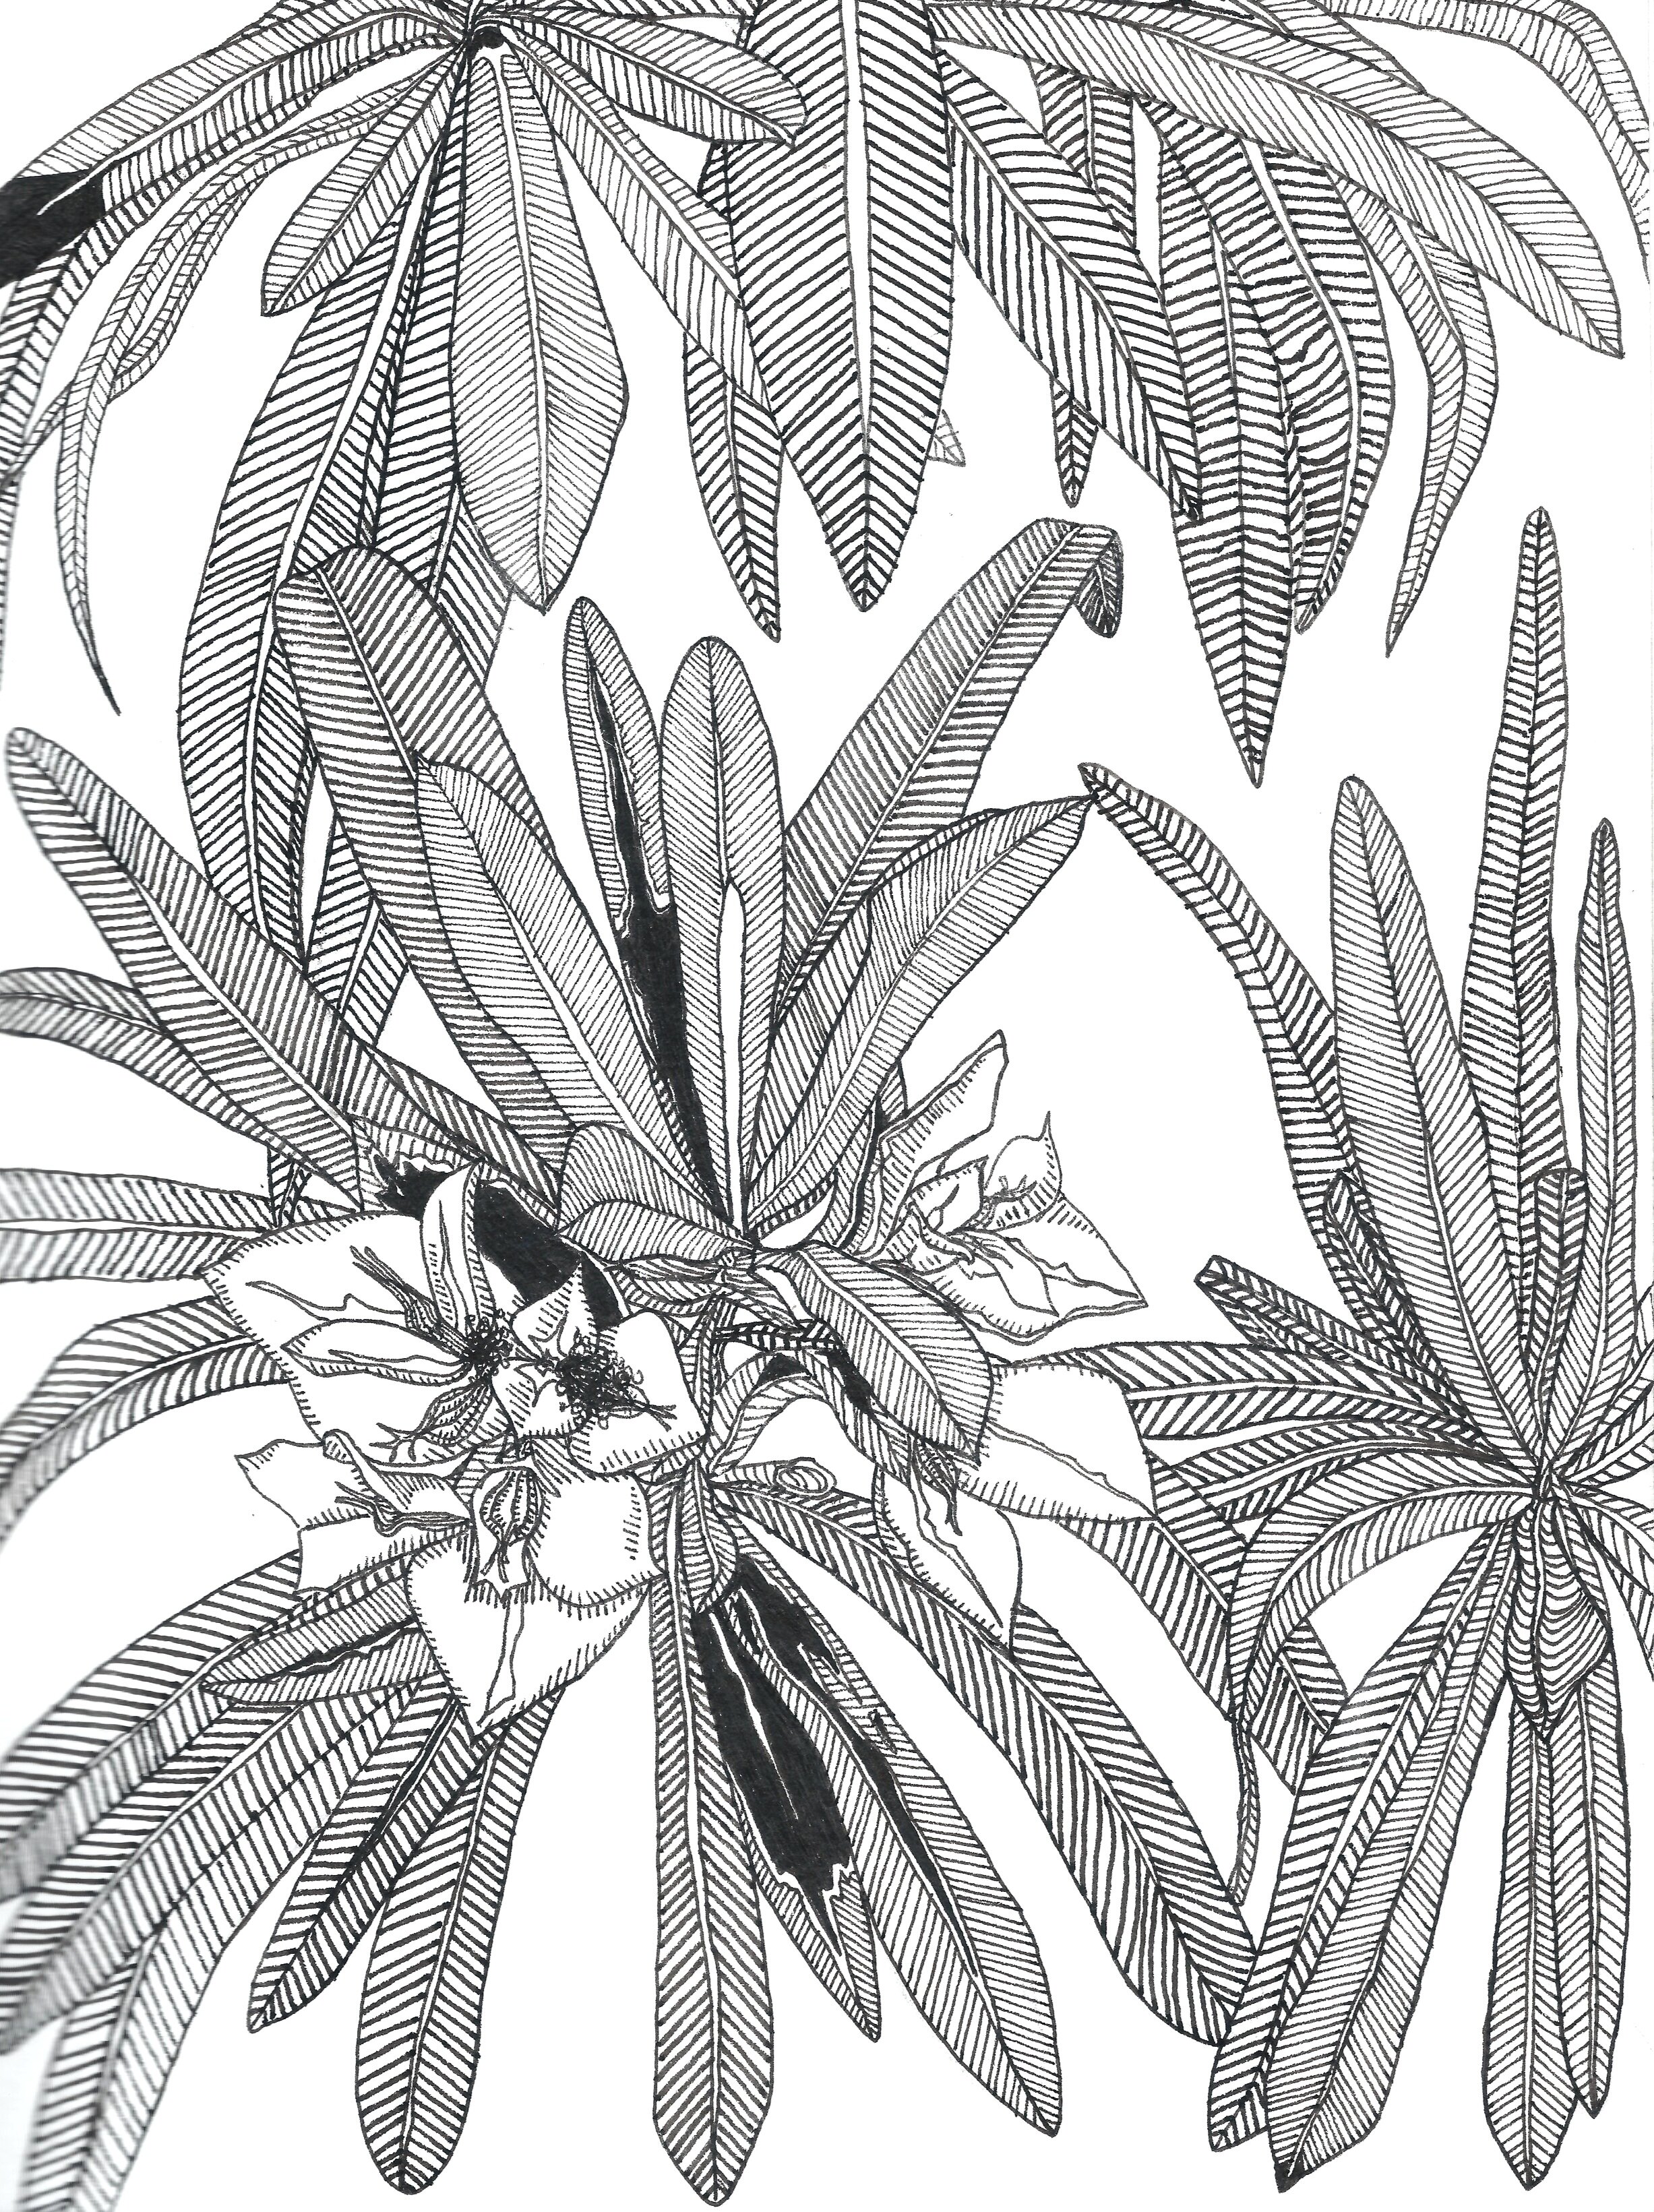   Rhododendron ferrugineum,  Ink Pen on Paper, 8 x 10”, 2019 